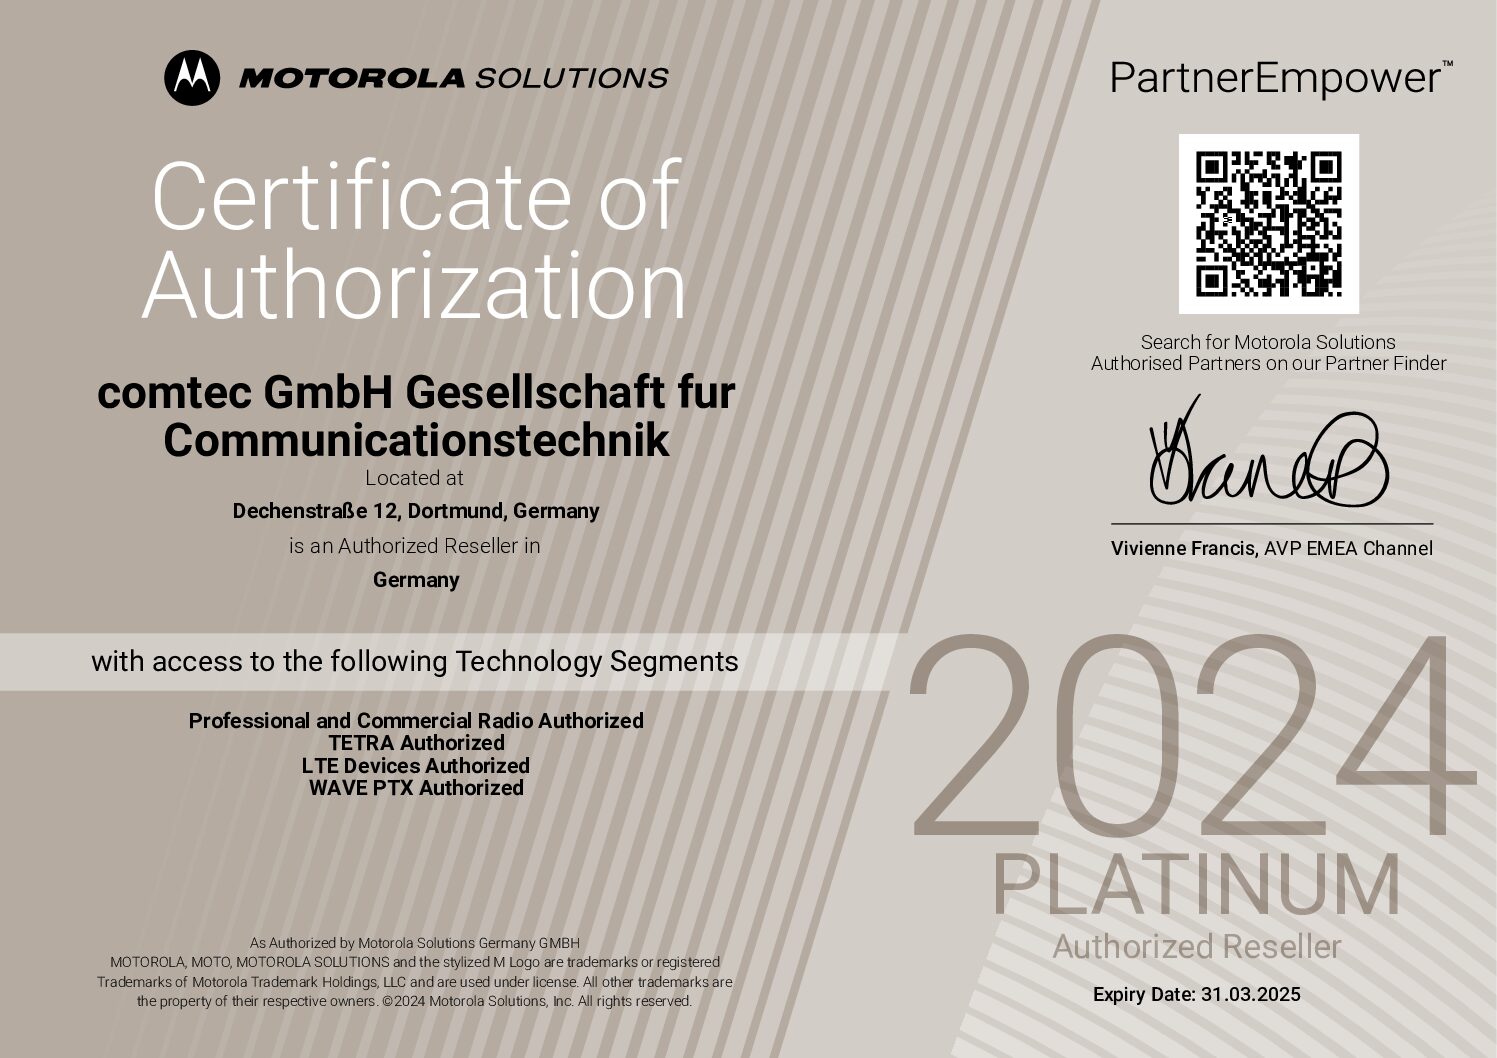 Motorola 2024 Certificate of Authorization Platinum Reseller